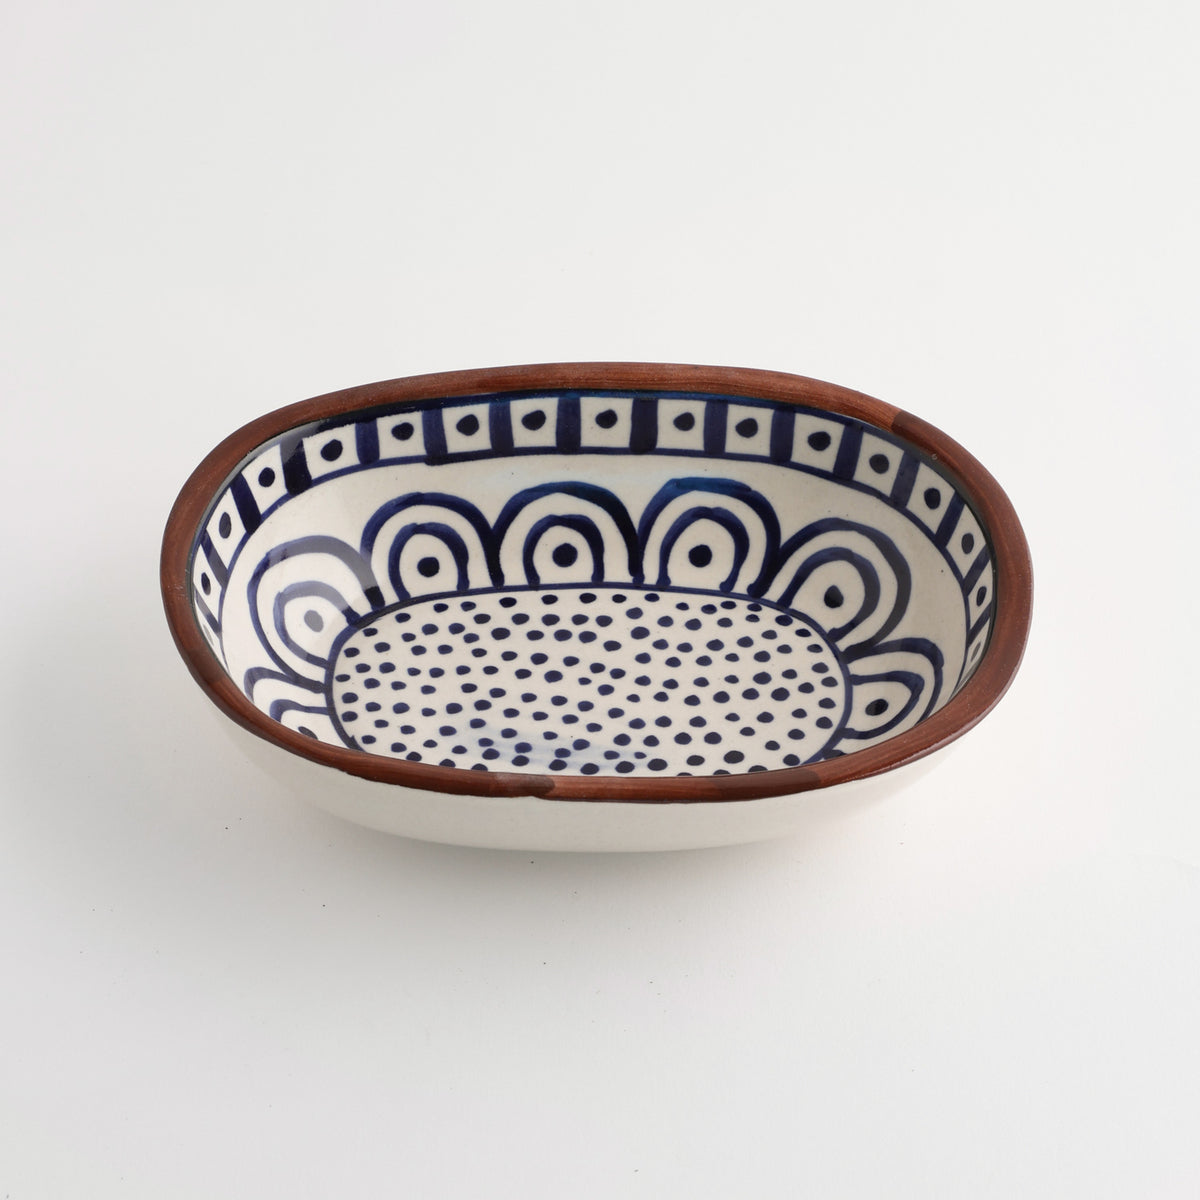 Ceramic Oval Dish - 7.2 x 5 x 2